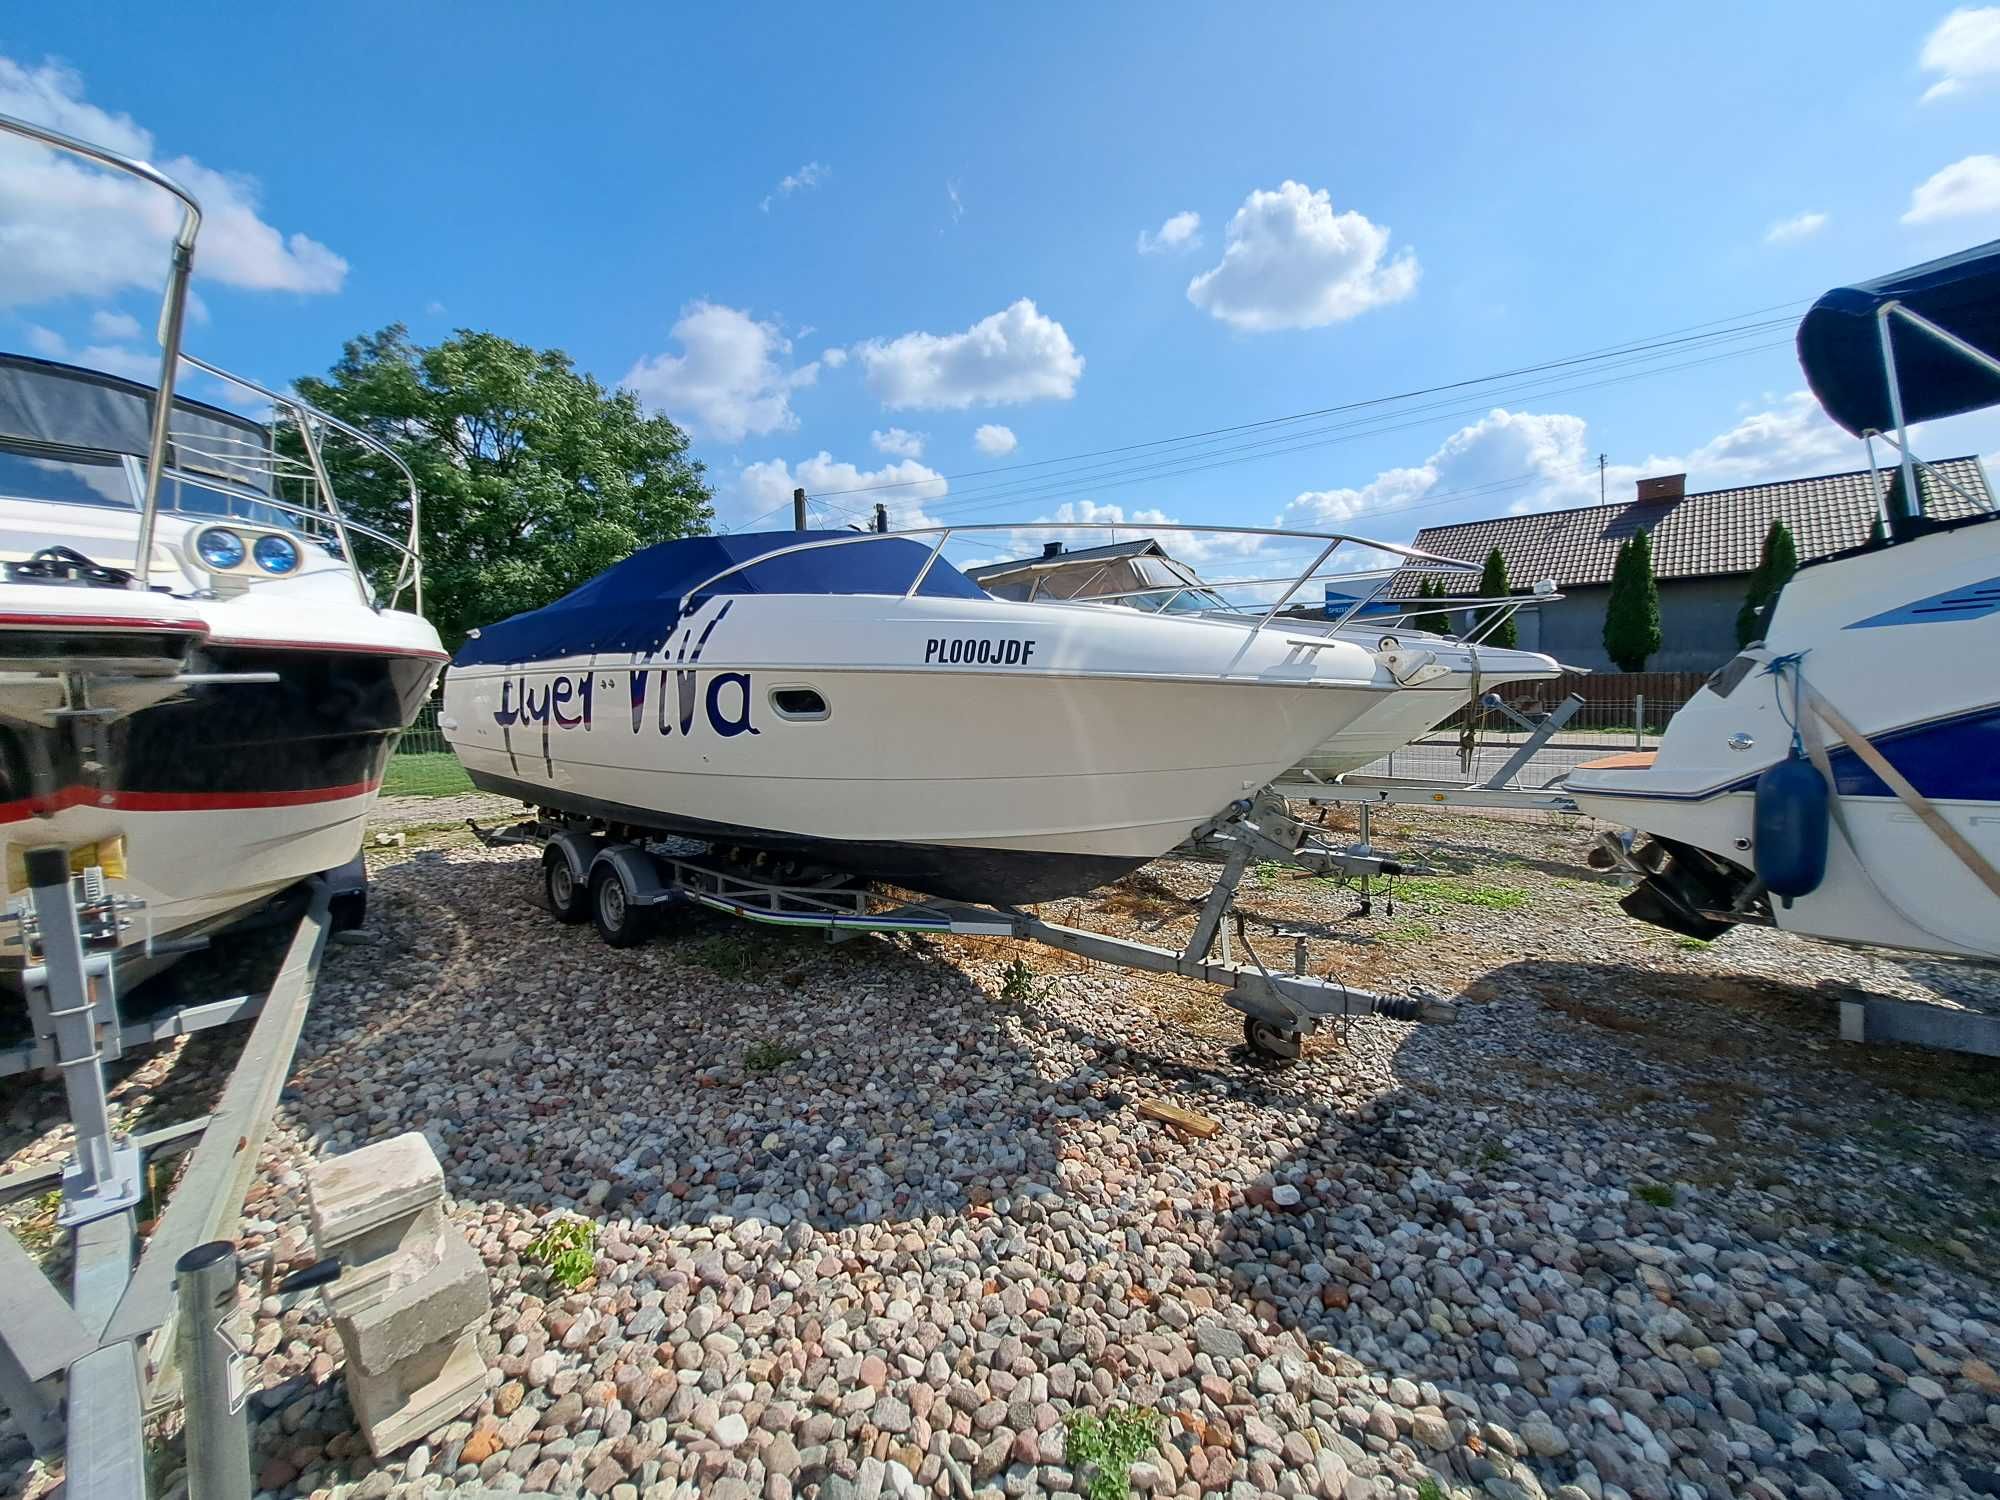 Piękna łódź  motorowa Beneteau  Flyer Viva 780